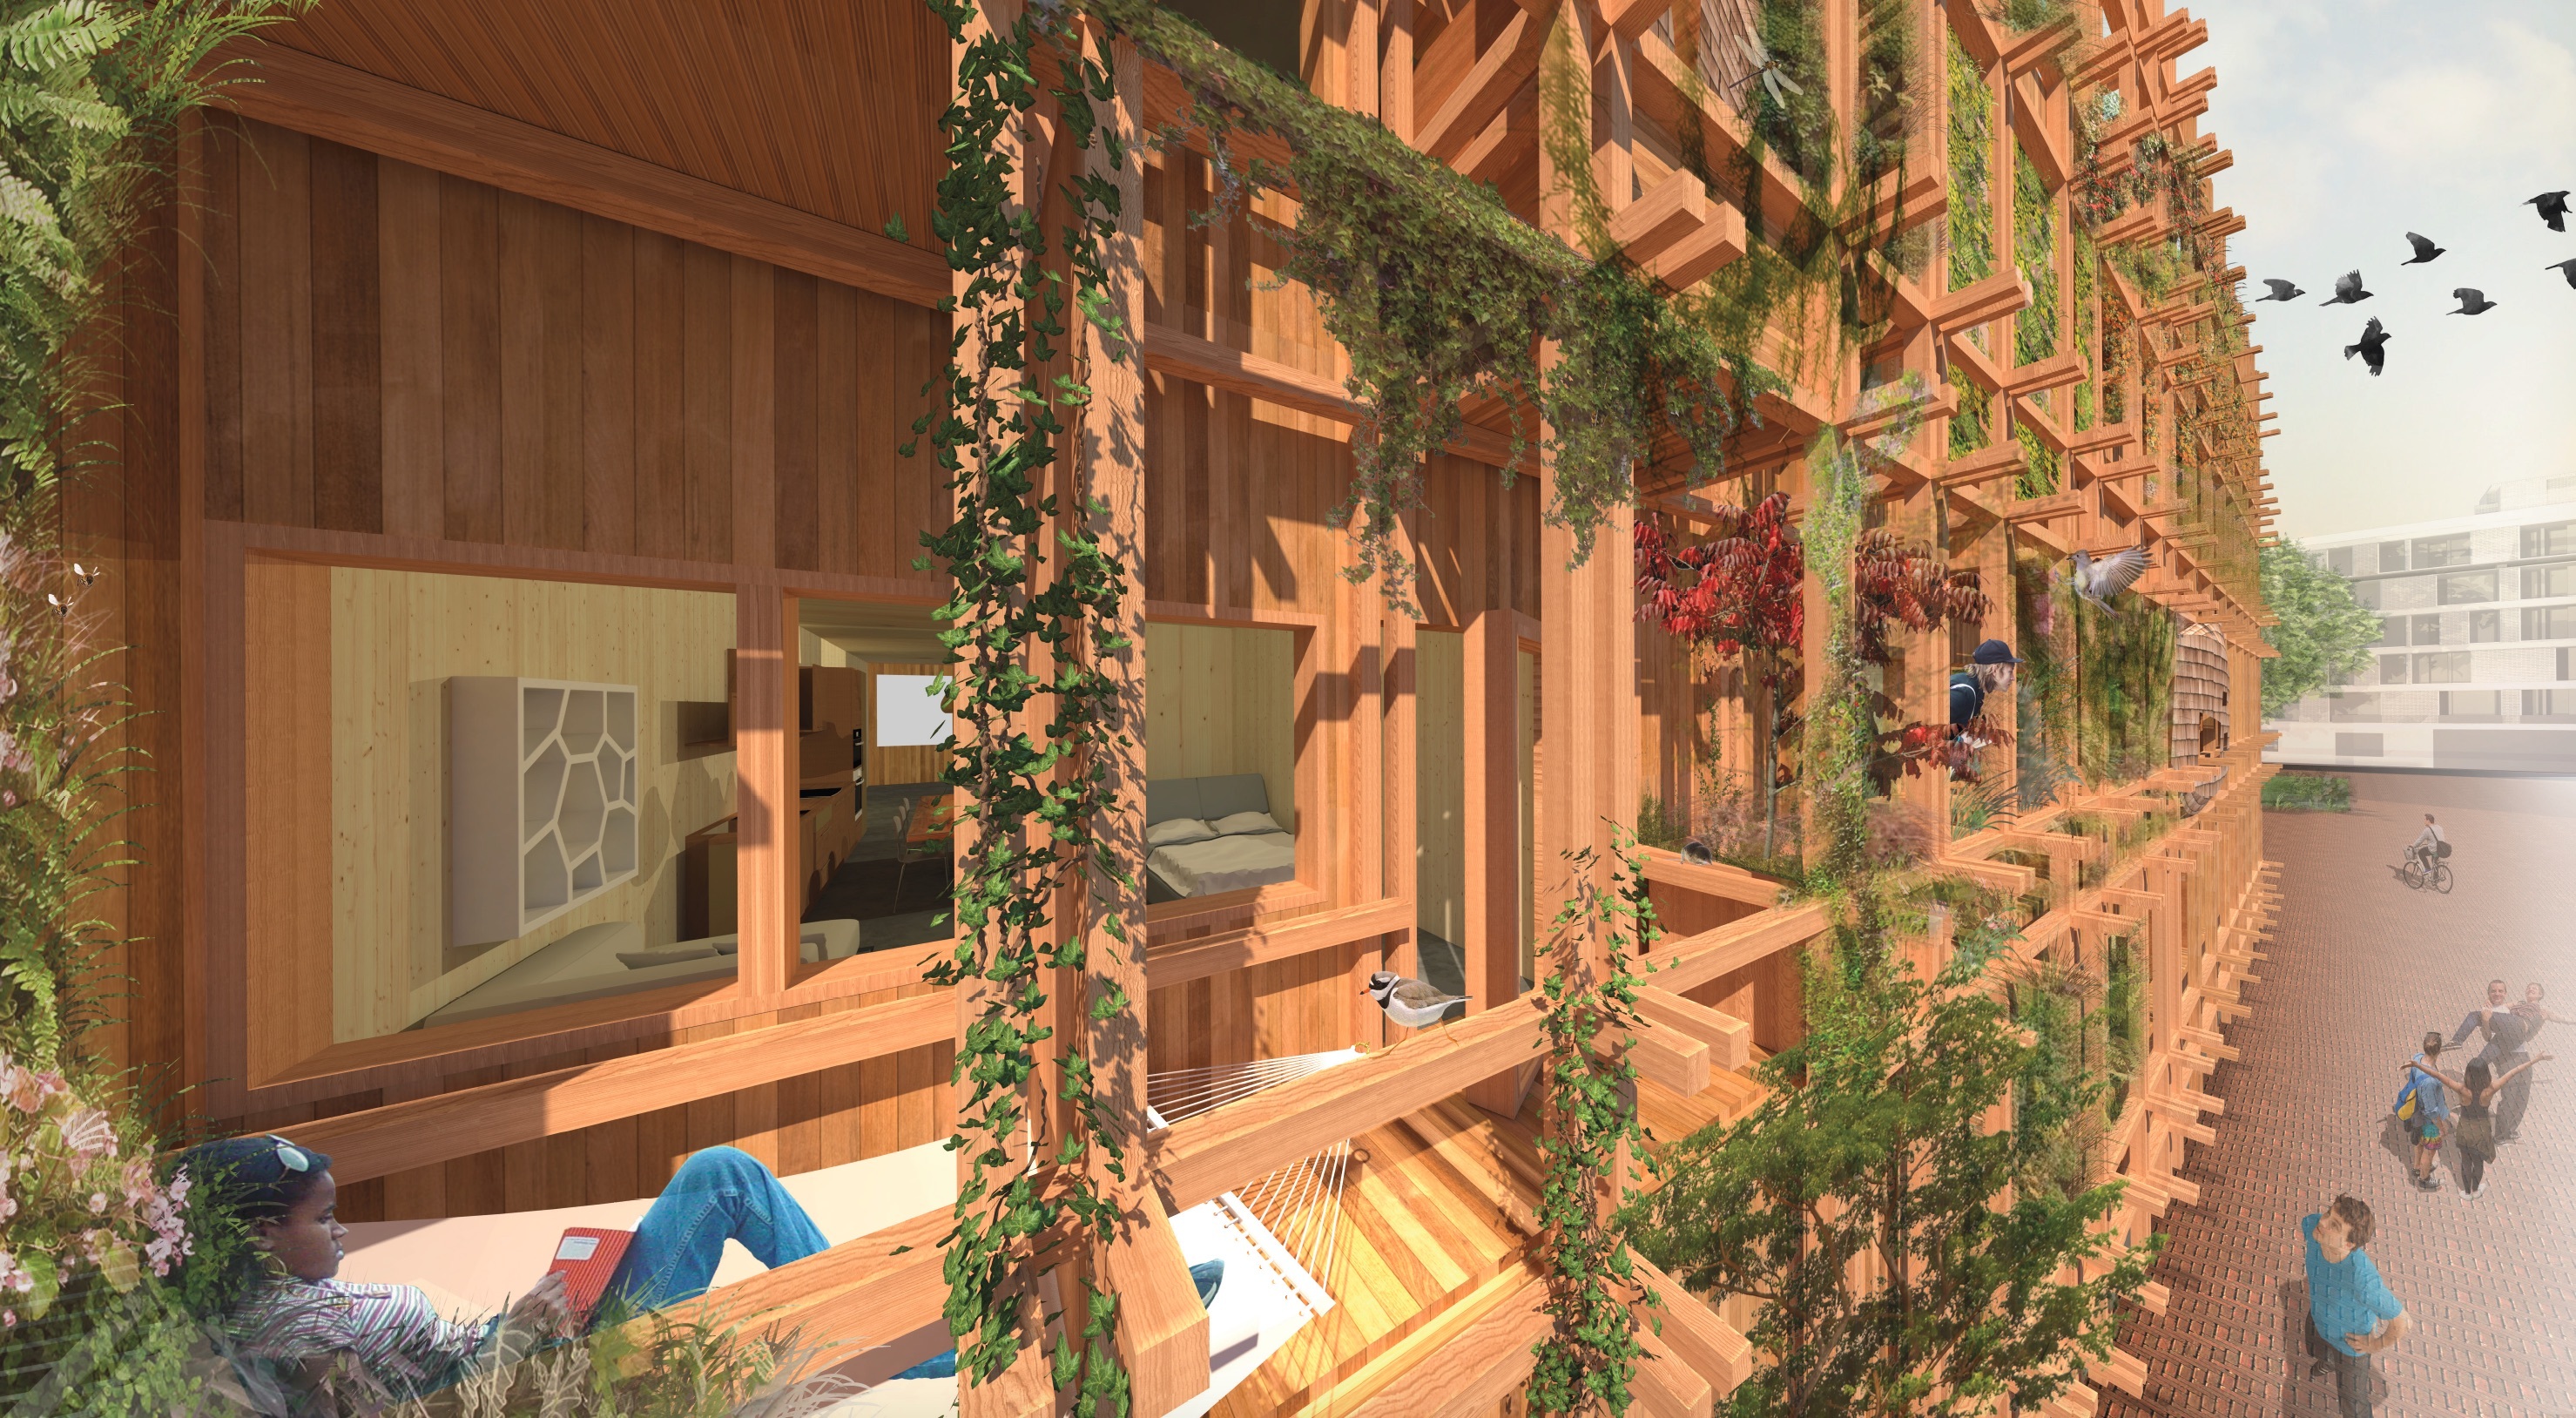 Ontwerpschets de Warren met houten gevels en balkons waar groene begroeing tegenaan groeit.